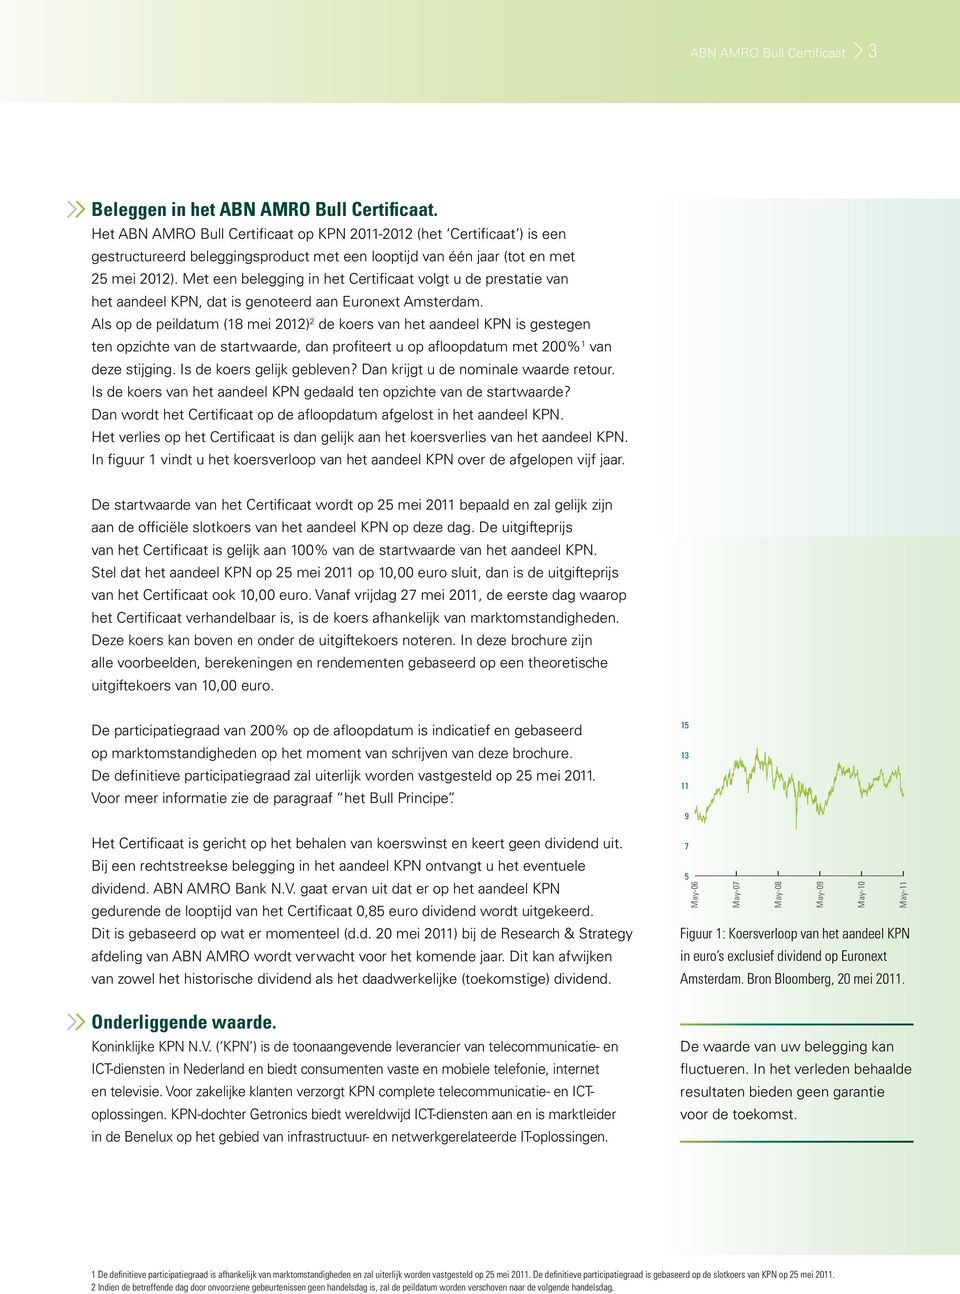 Met een belegging in het Certificaat volgt u de prestatie van het aandeel KPN, dat is genoteerd aan Euronext Amsterdam.